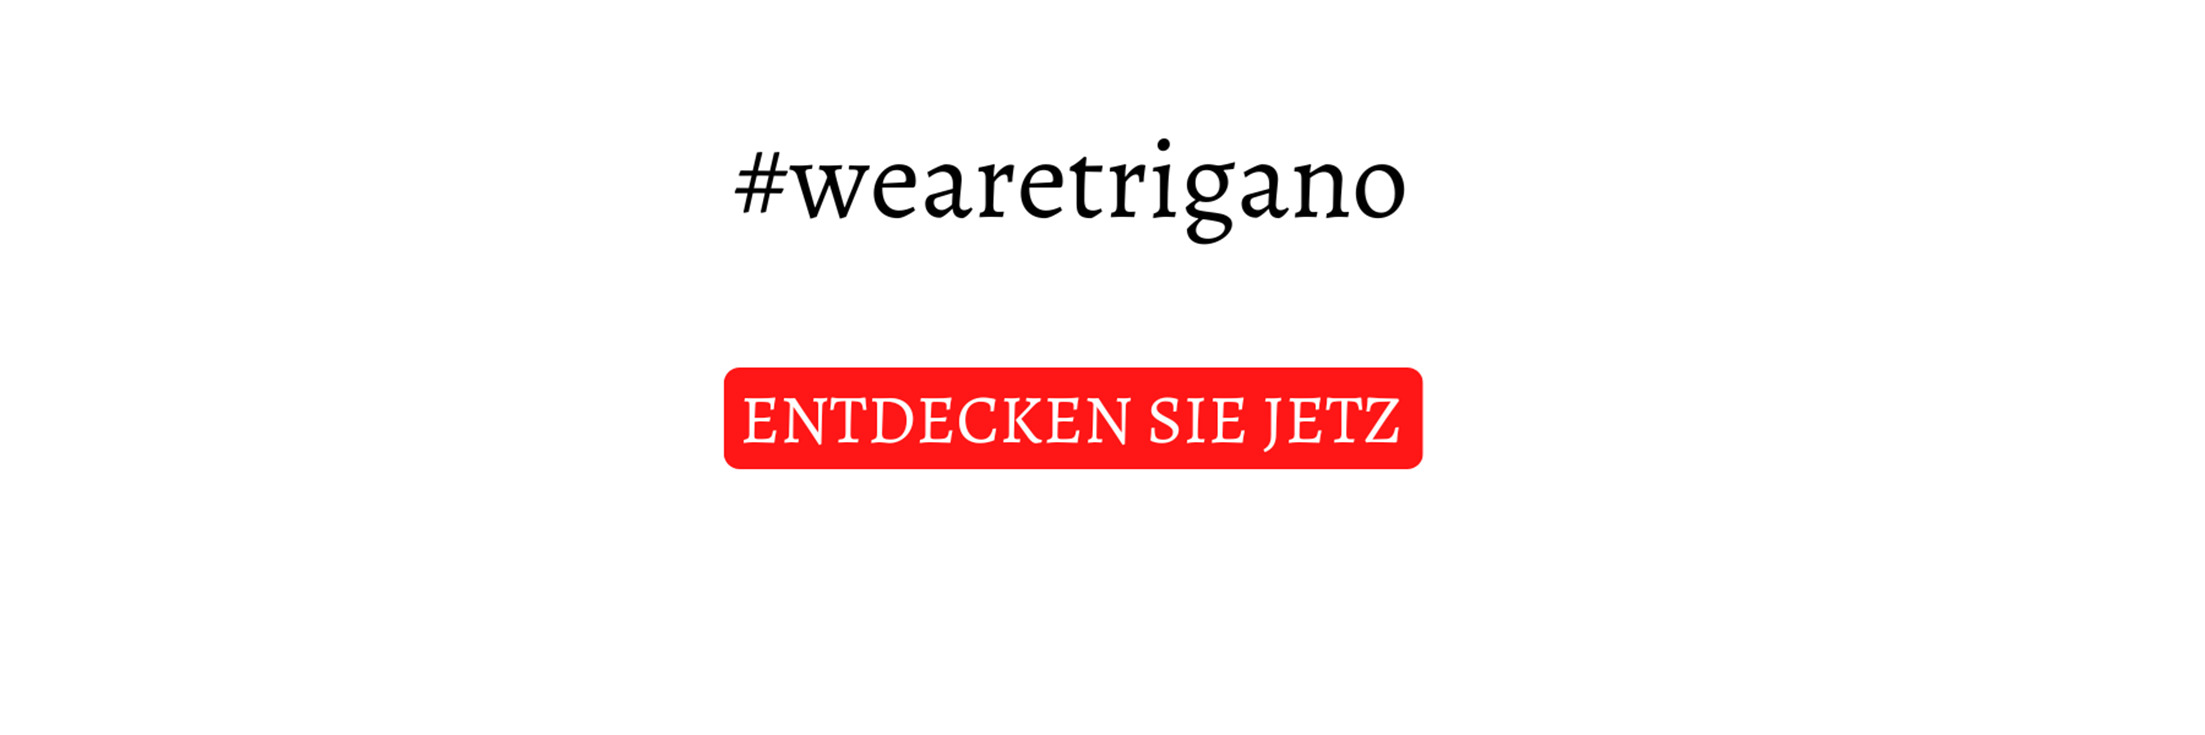 wearetrigano banner (DE).png